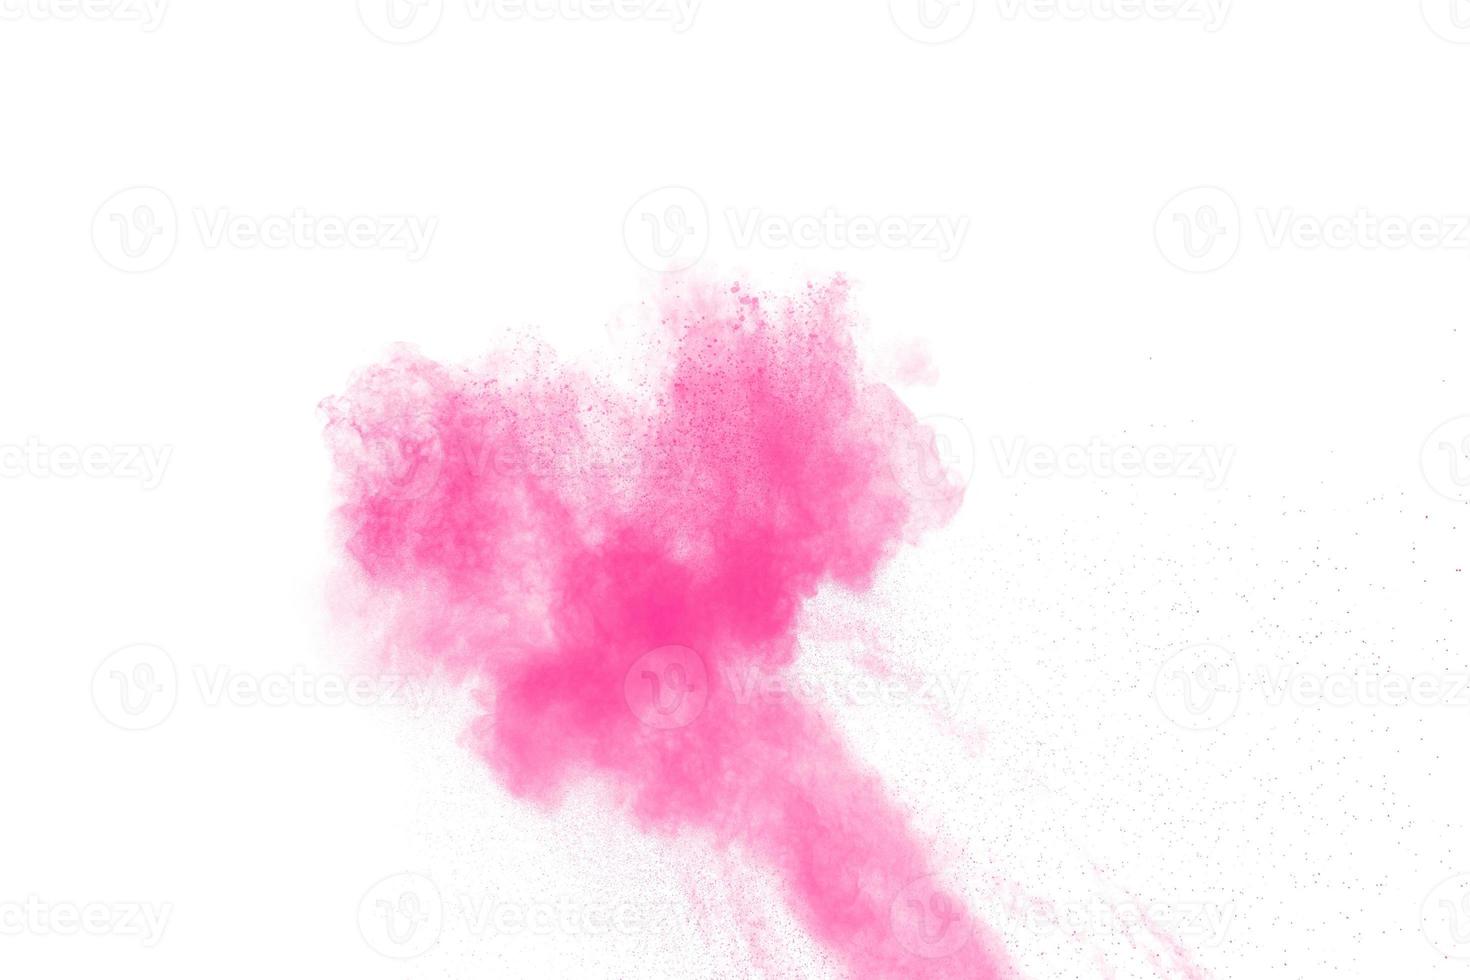 esplosione di polvere rosa astratta su sfondo bianco. congelare il movimento di polvere rosa schizzata. foto